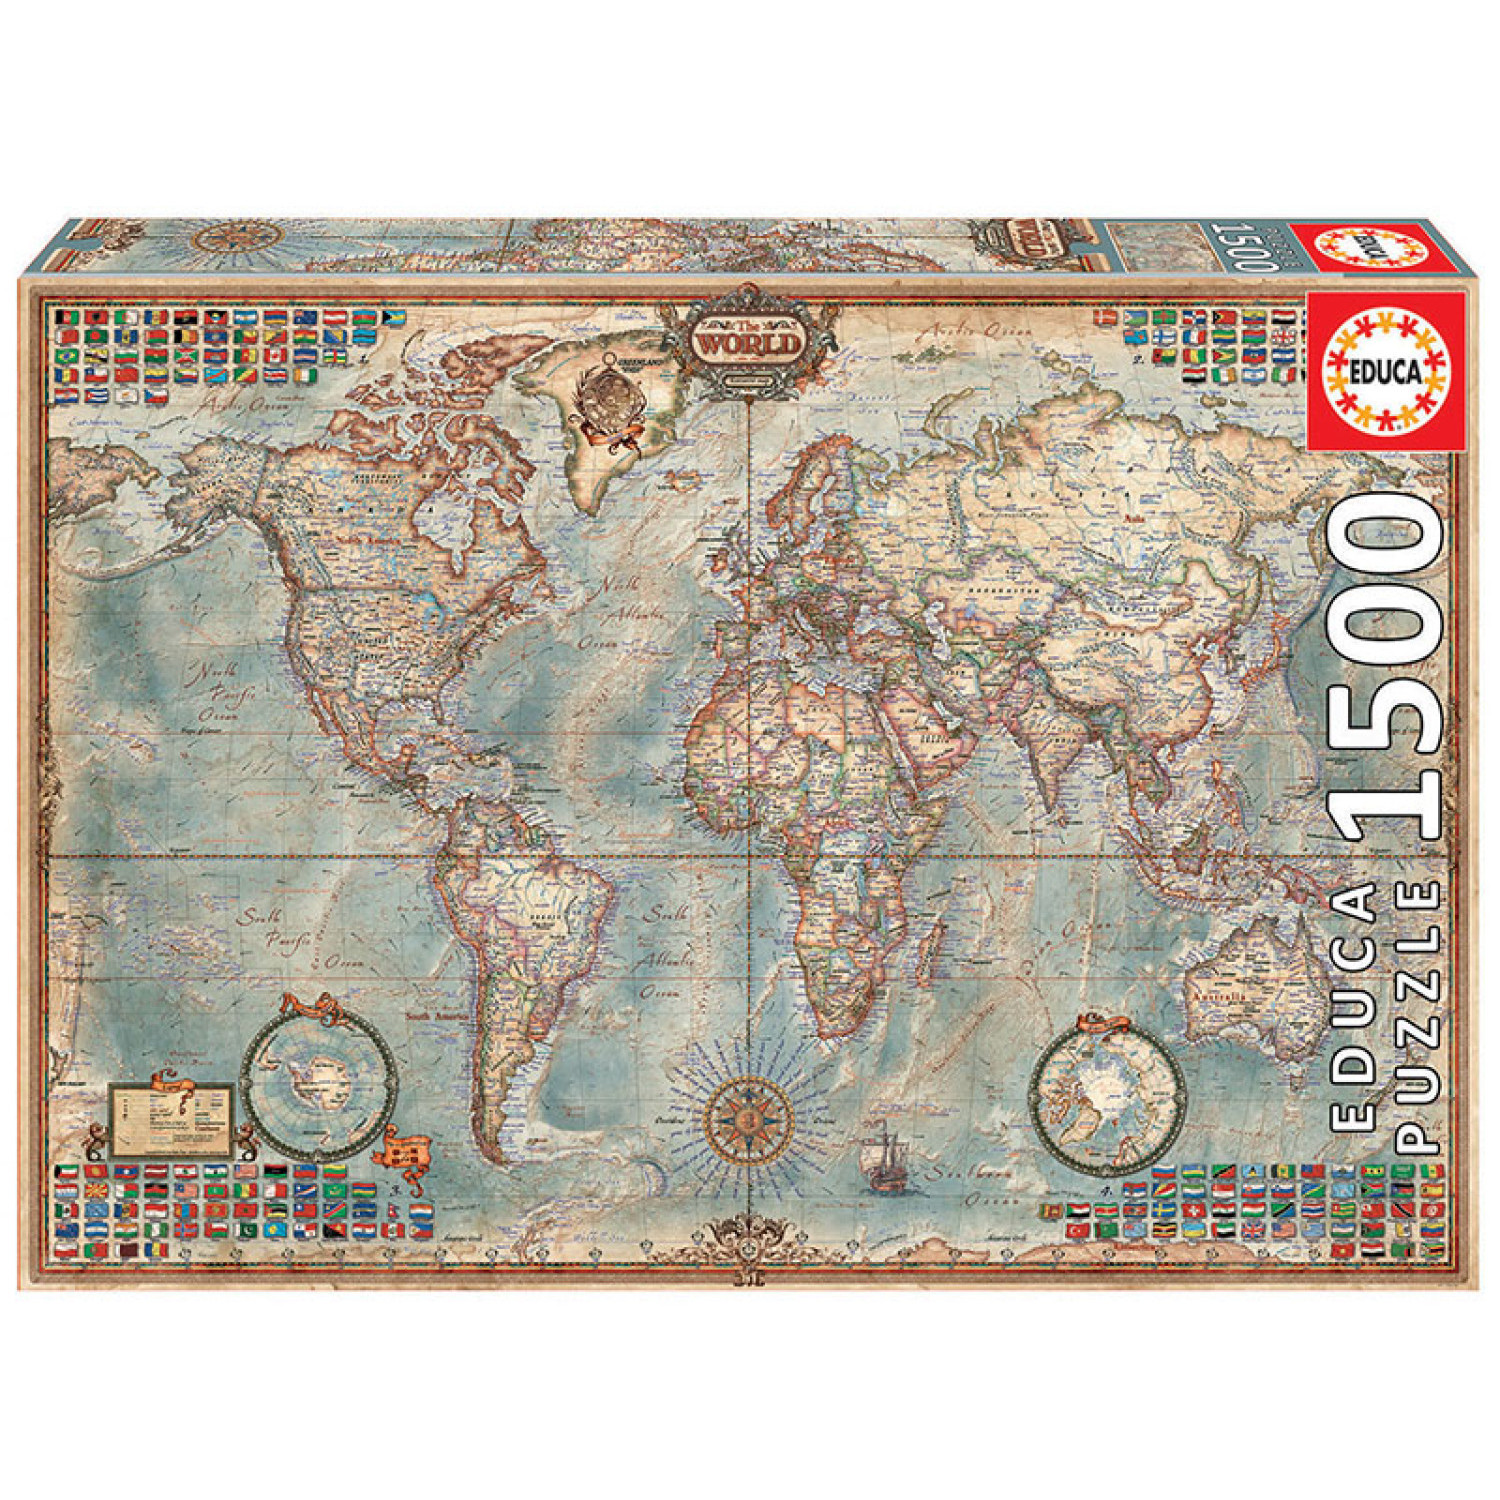 Пъзел Educa Политическа карта на света, 1500 елемента, 16005